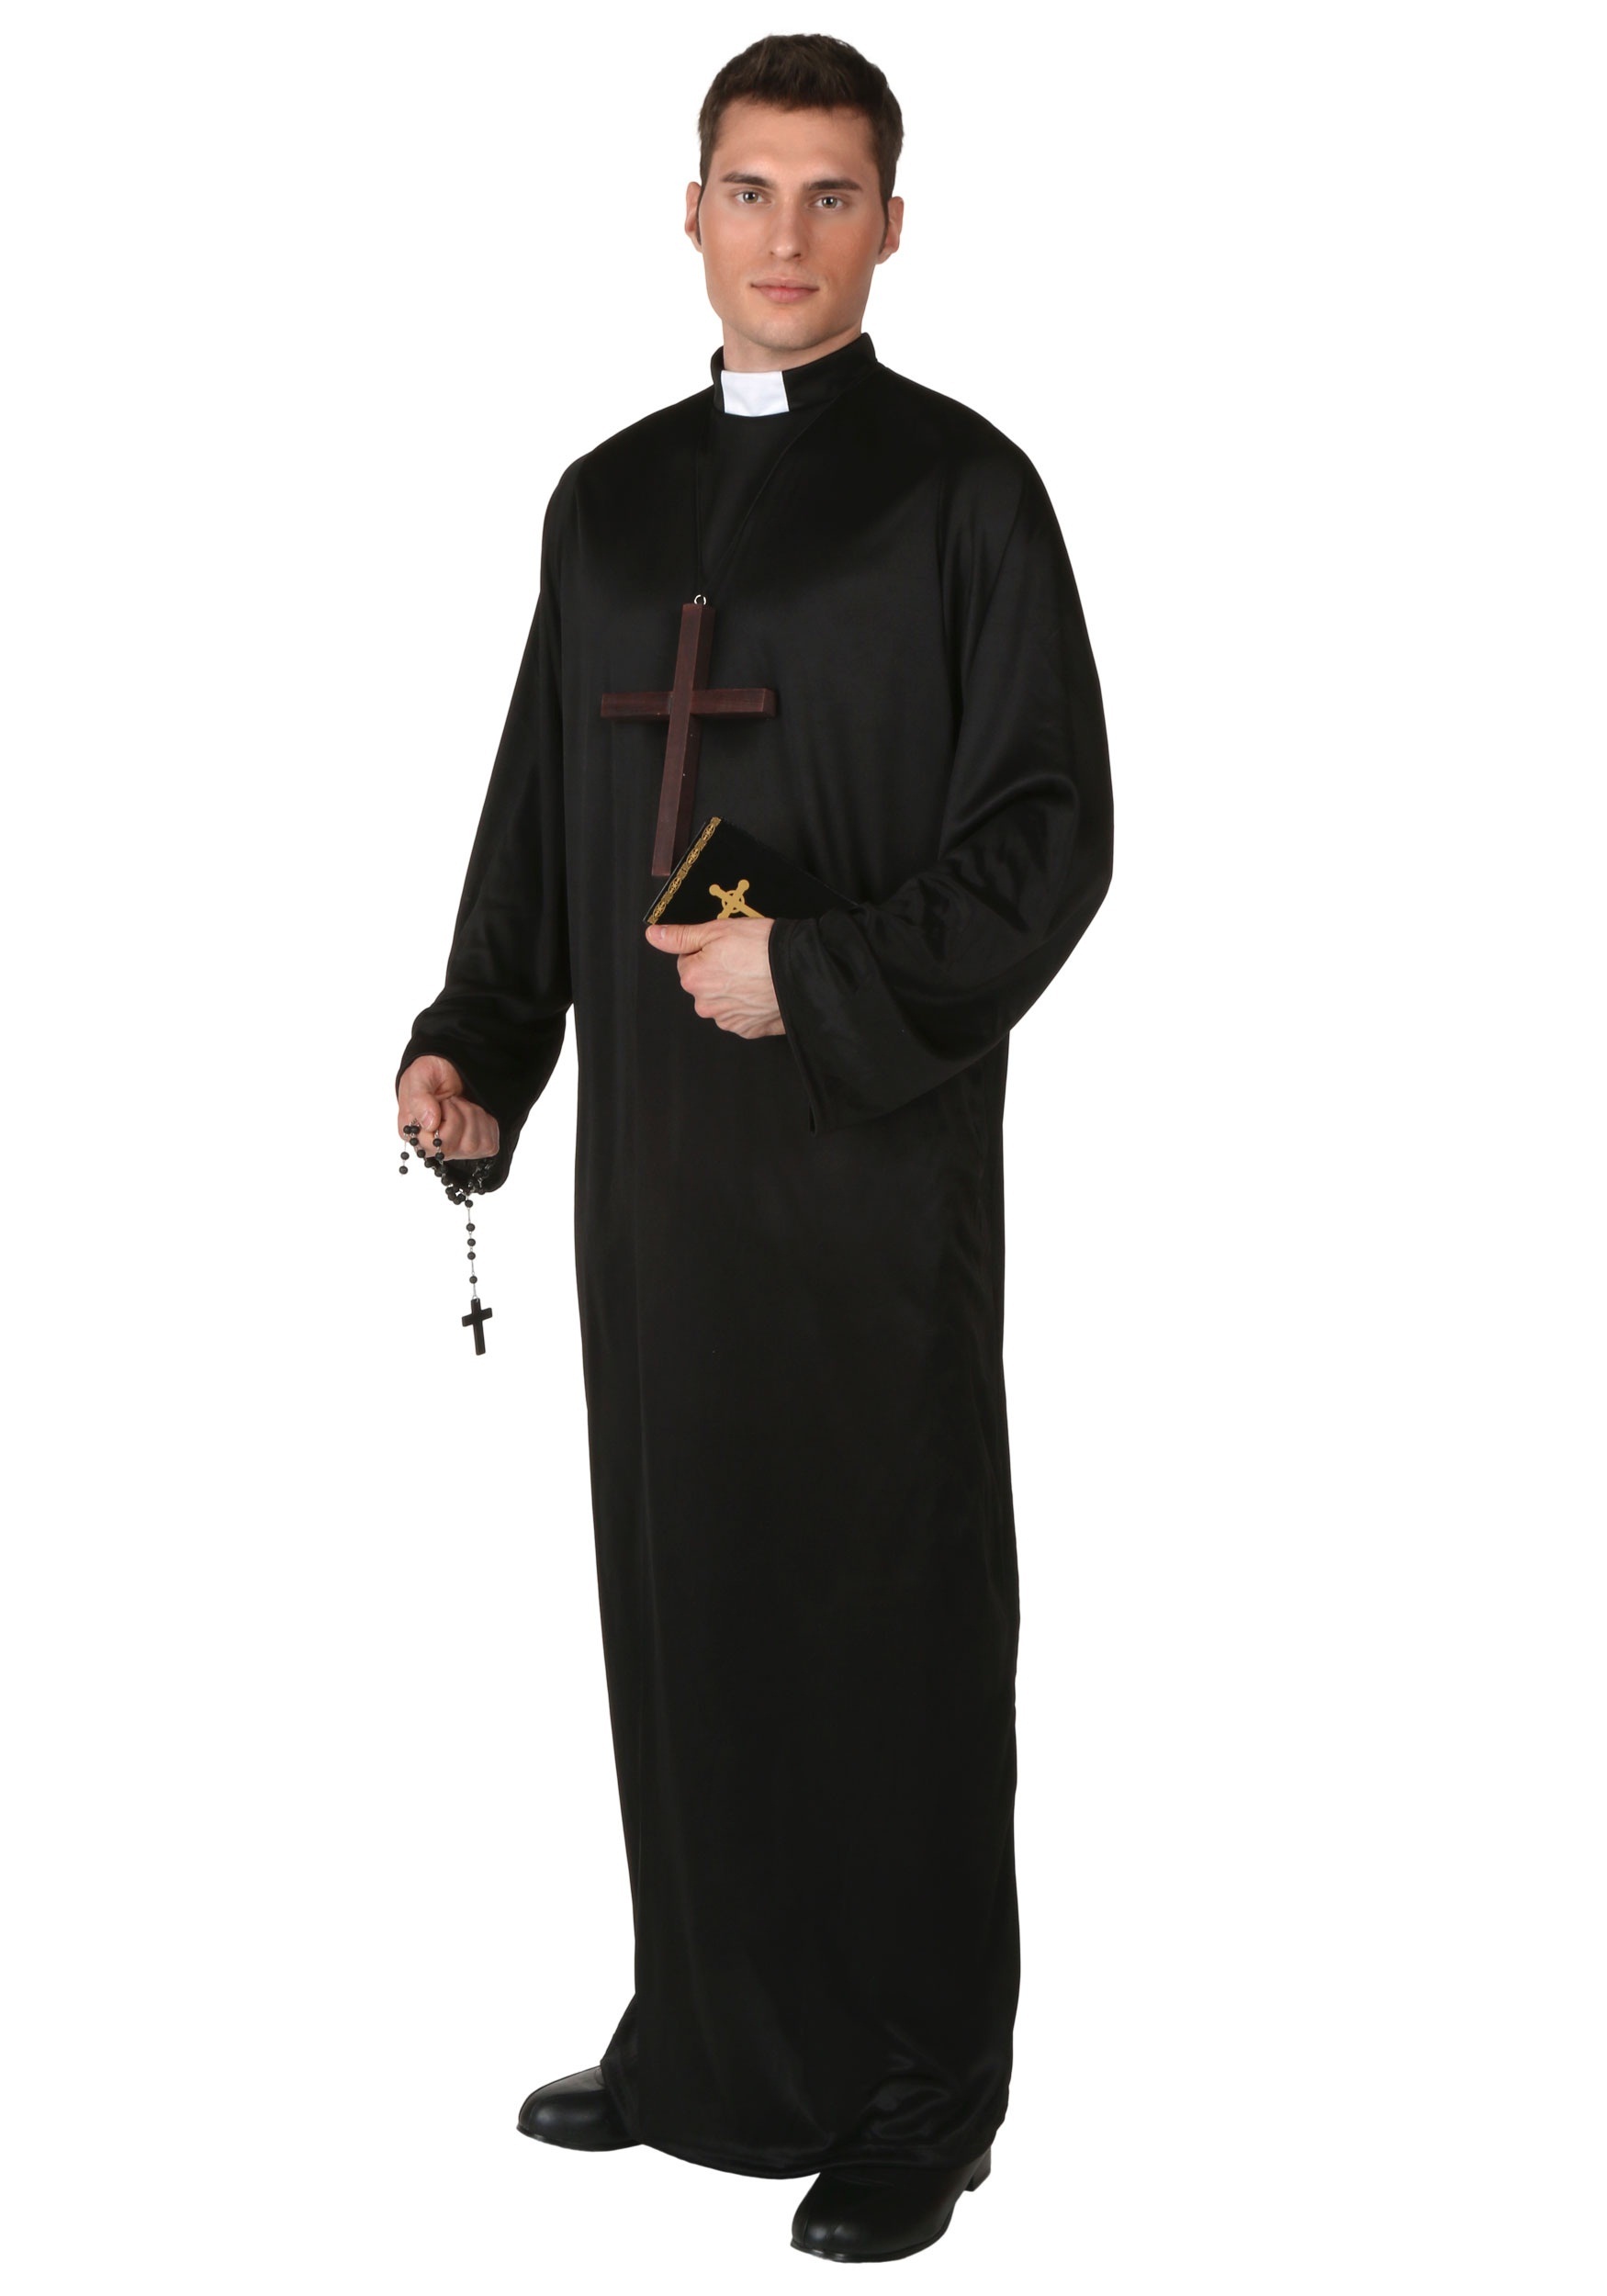 Plus Size Pious Priest Costume , Religious Costumes